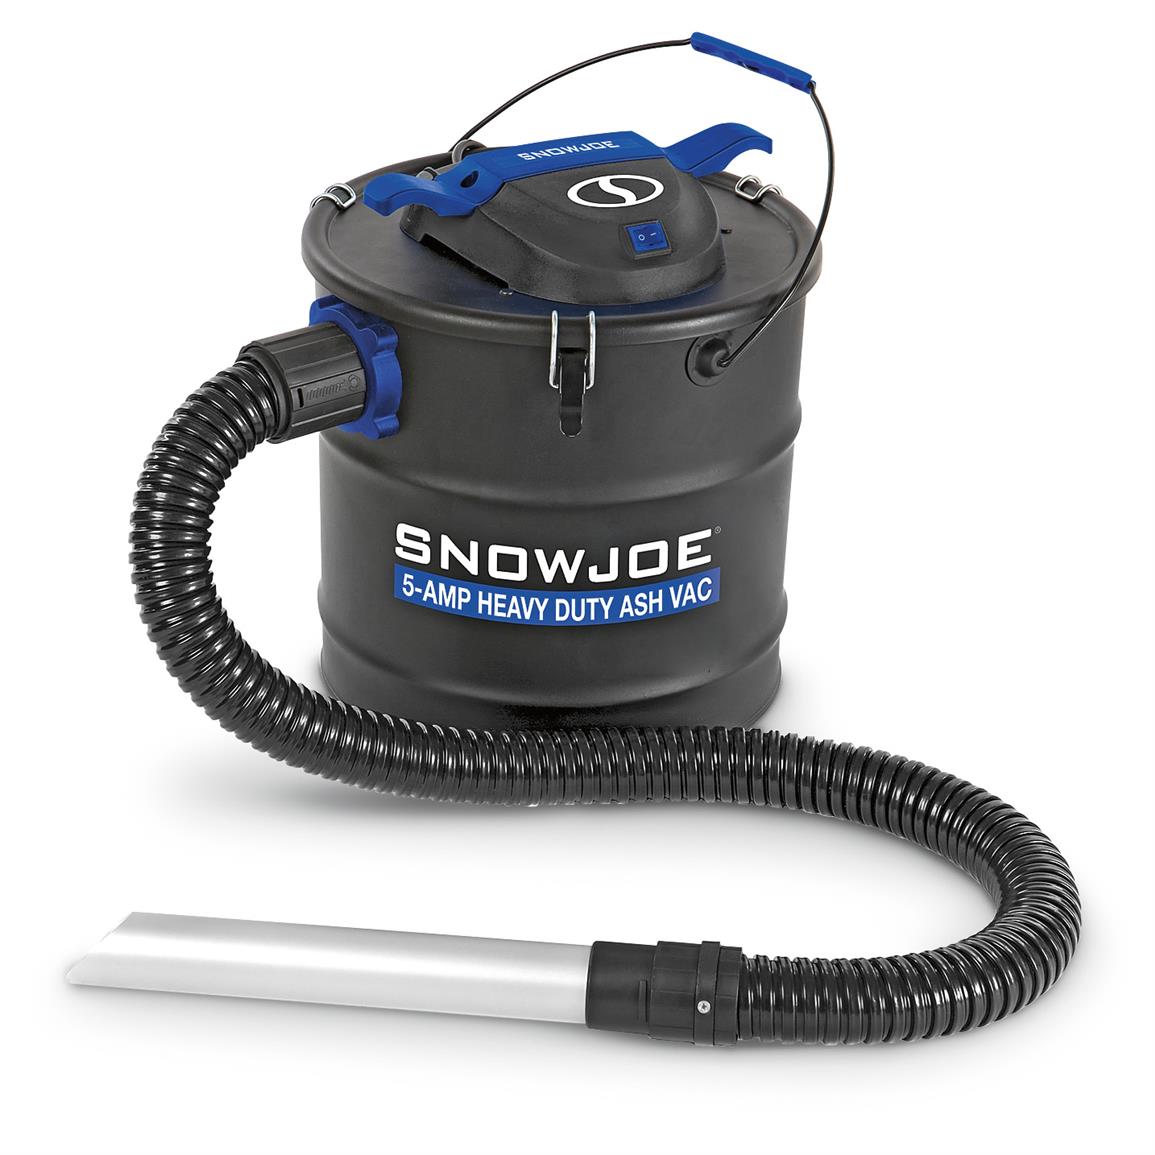 Snow Joe Heavy Duty Ash Vacuum, 5-Amp